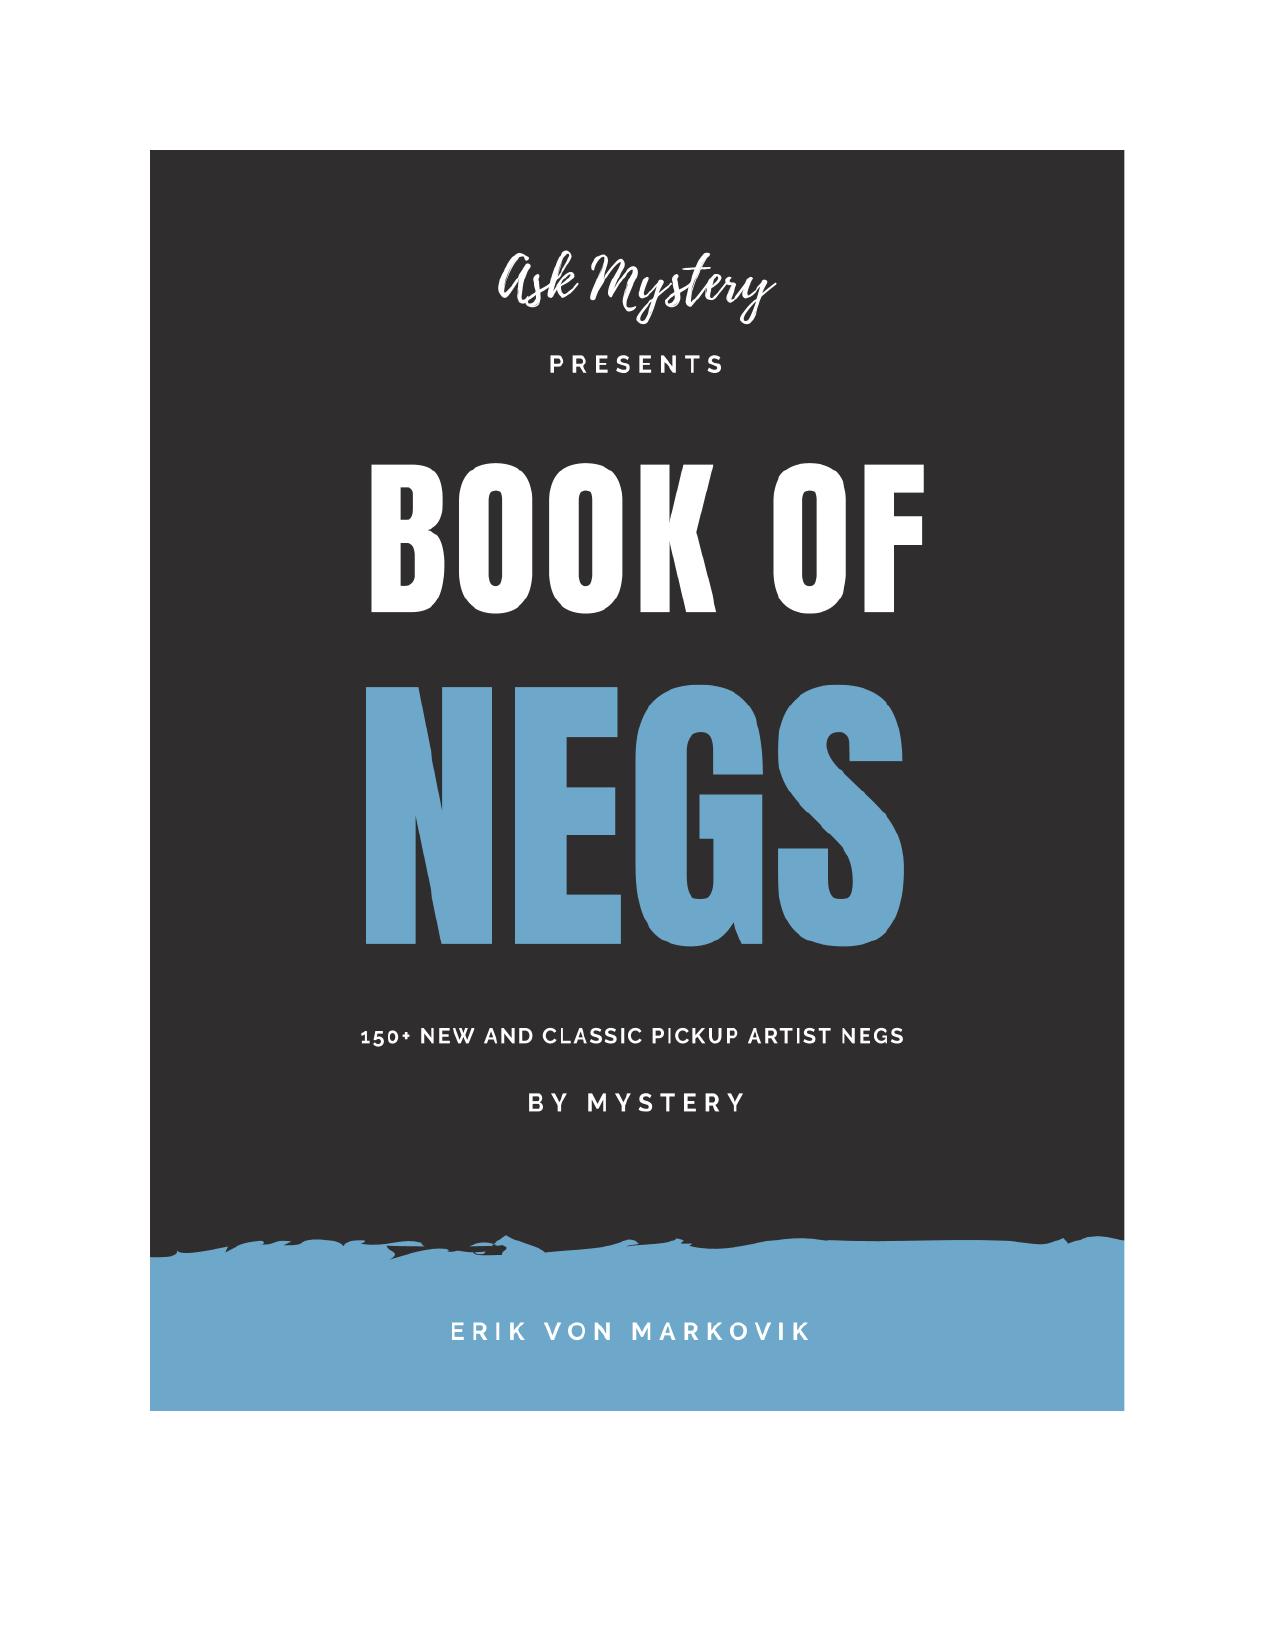 Book of Negs by Mystery by Erik von Markovik